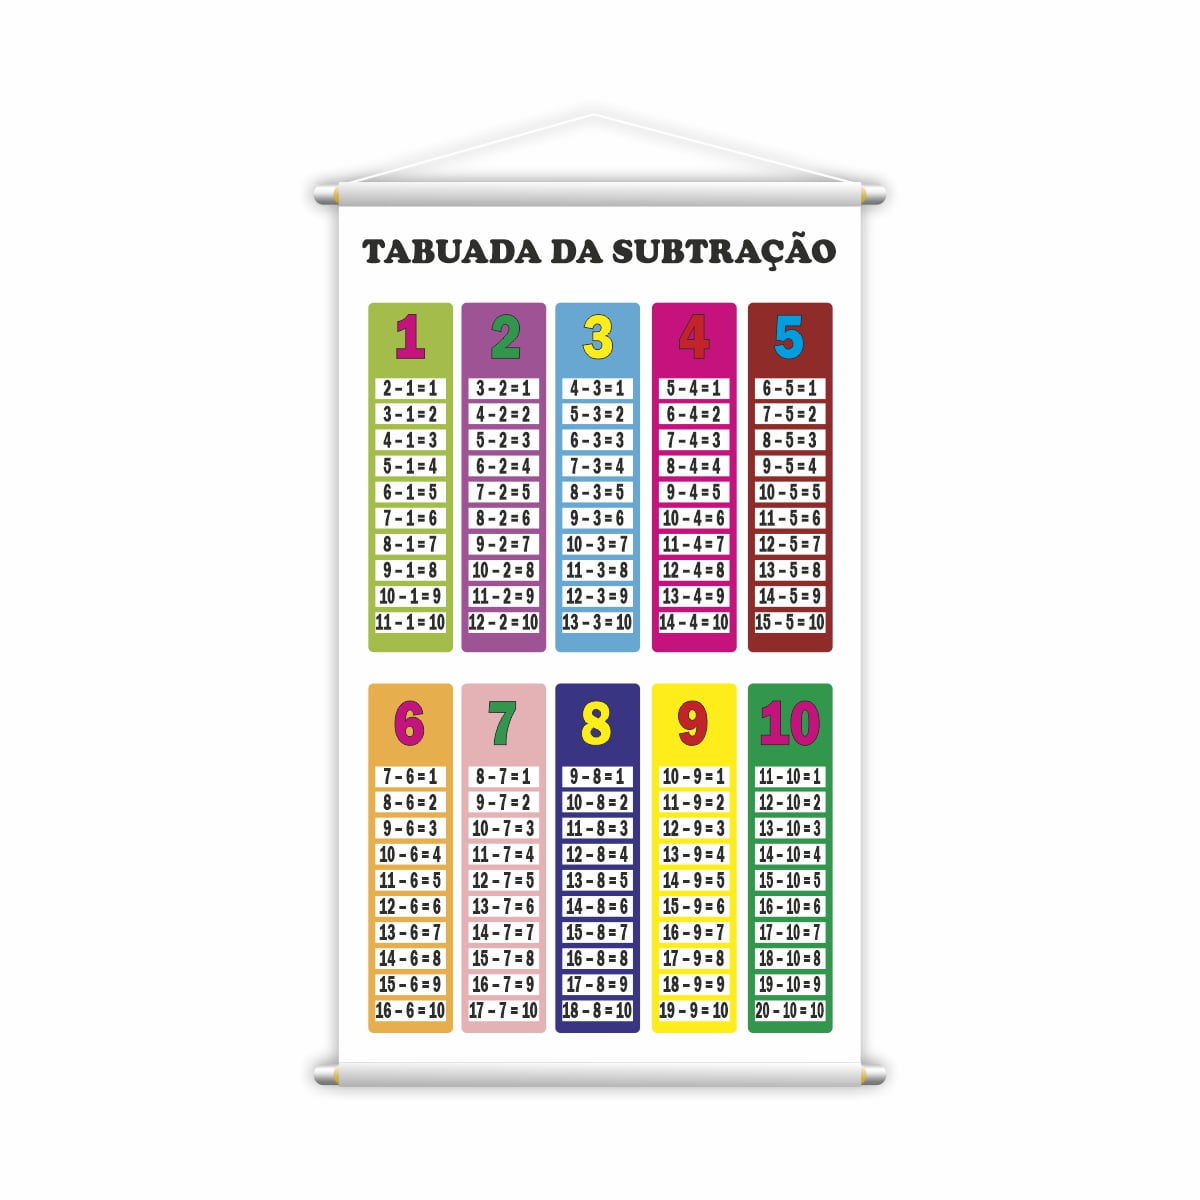 Banner Tabuada Da Subtração Colorida - BRINKSUL  Imparare le tabelline,  Matematica per bambini, Tabelline